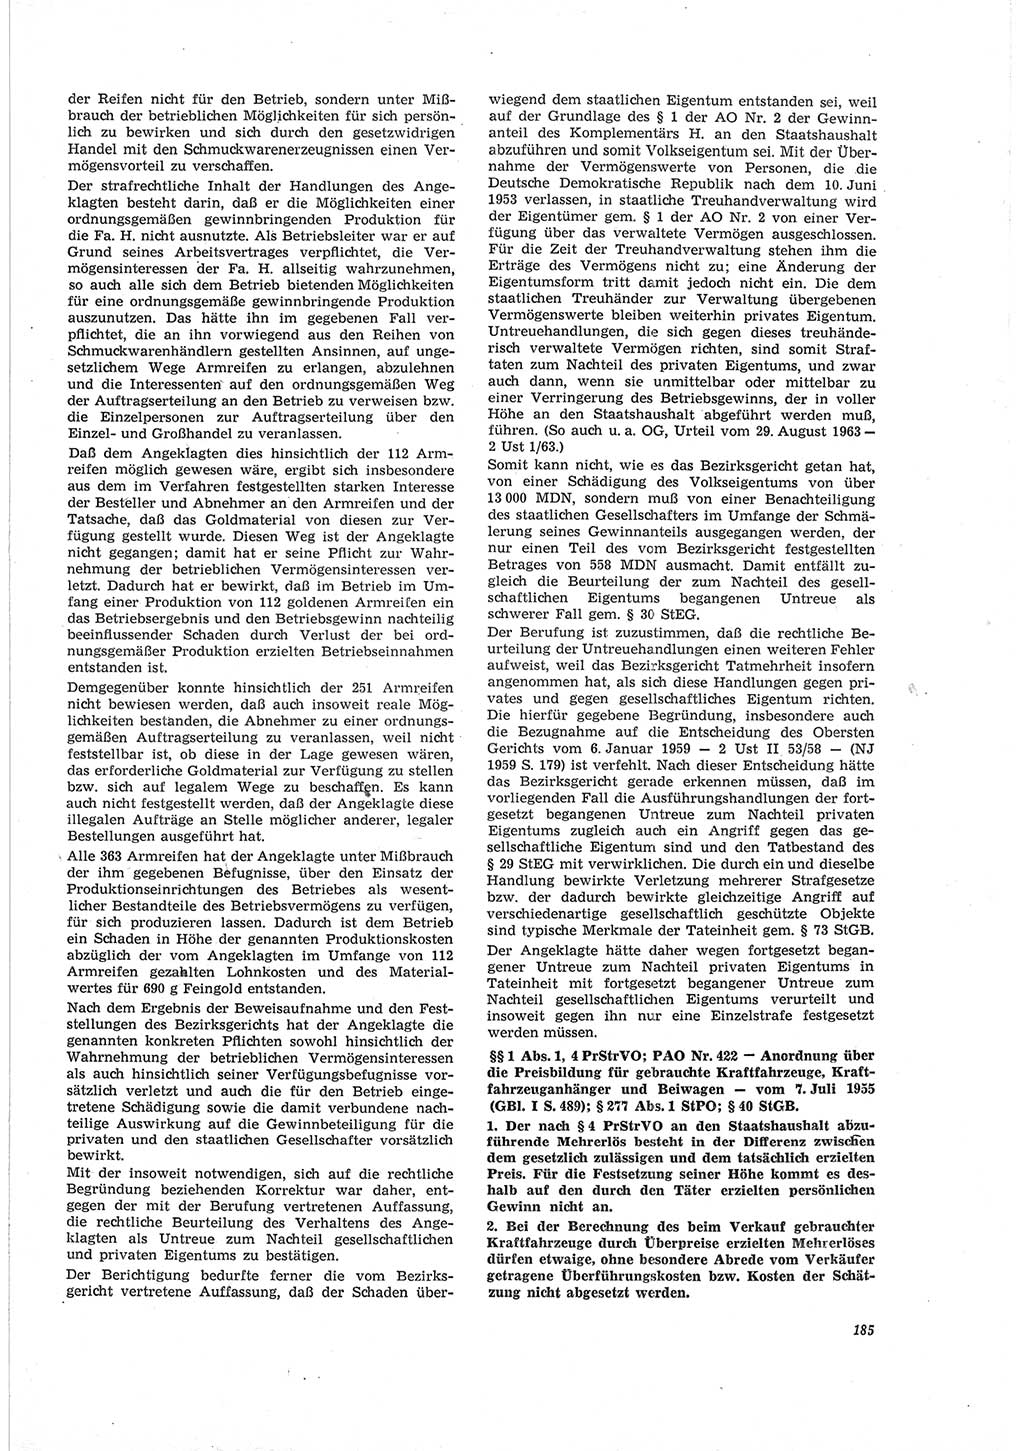 Neue Justiz (NJ), Zeitschrift für Recht und Rechtswissenschaft [Deutsche Demokratische Republik (DDR)], 19. Jahrgang 1965, Seite 185 (NJ DDR 1965, S. 185)